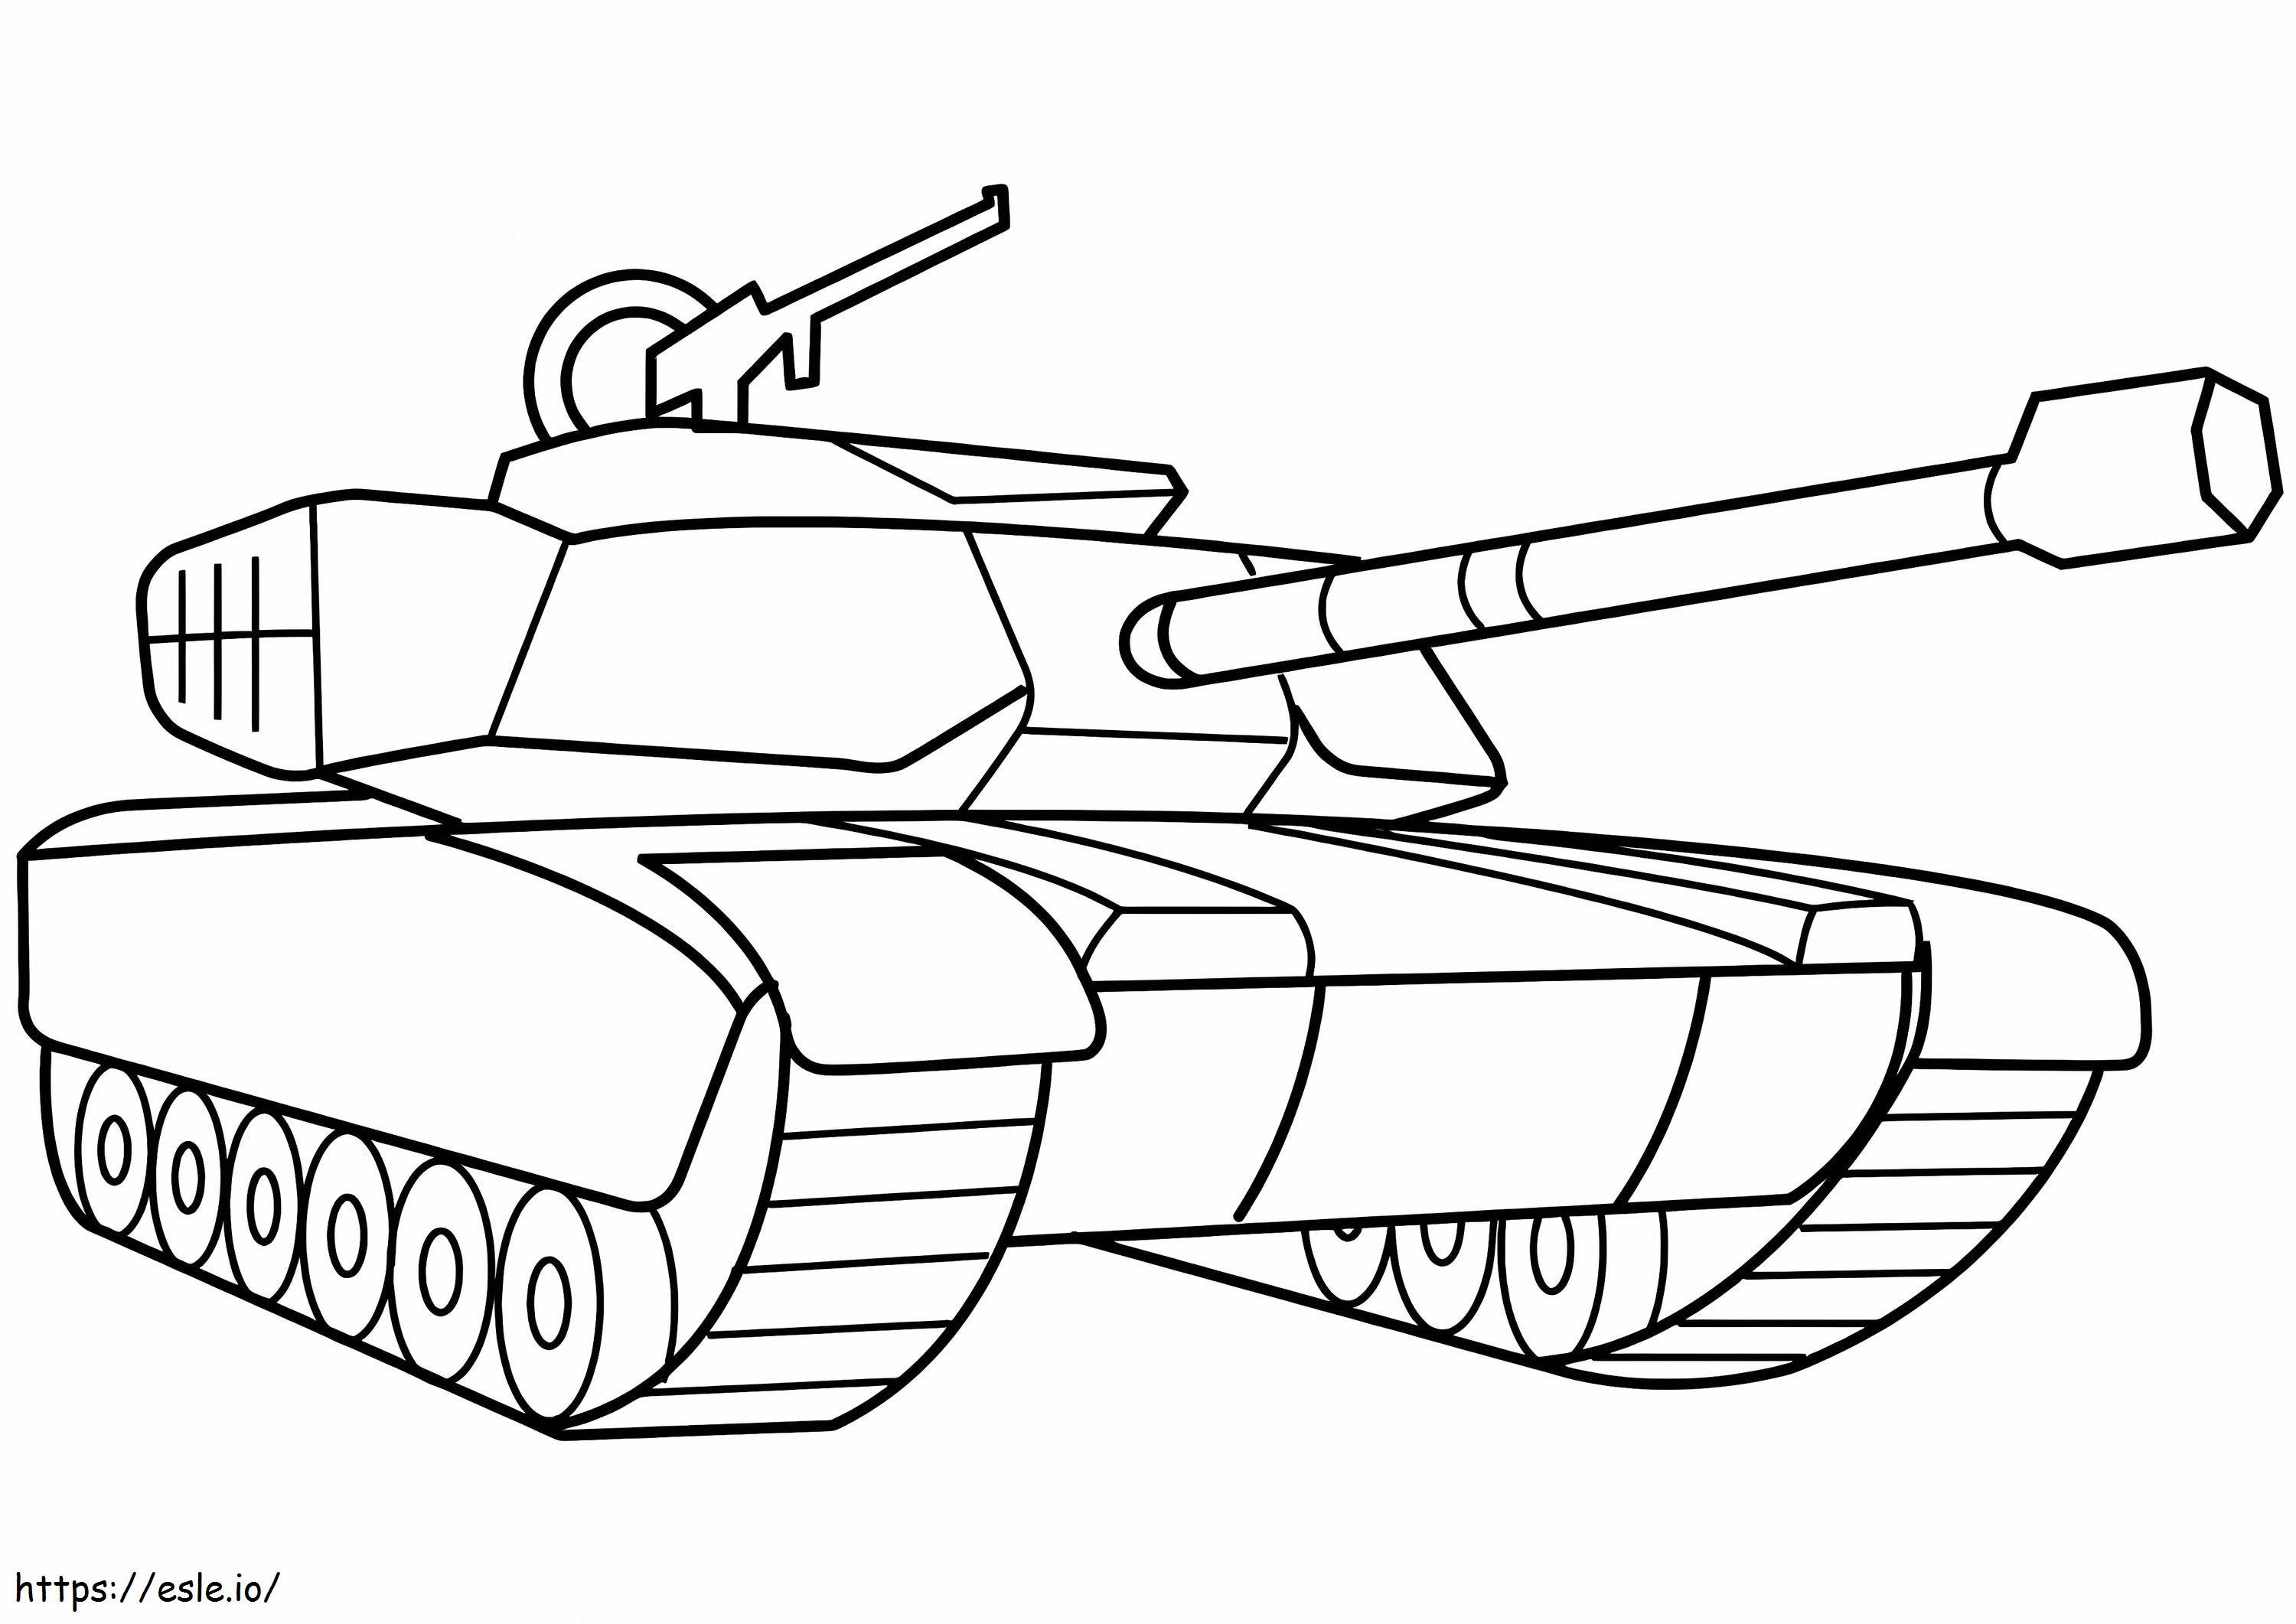 Militärpanzer ausmalbilder